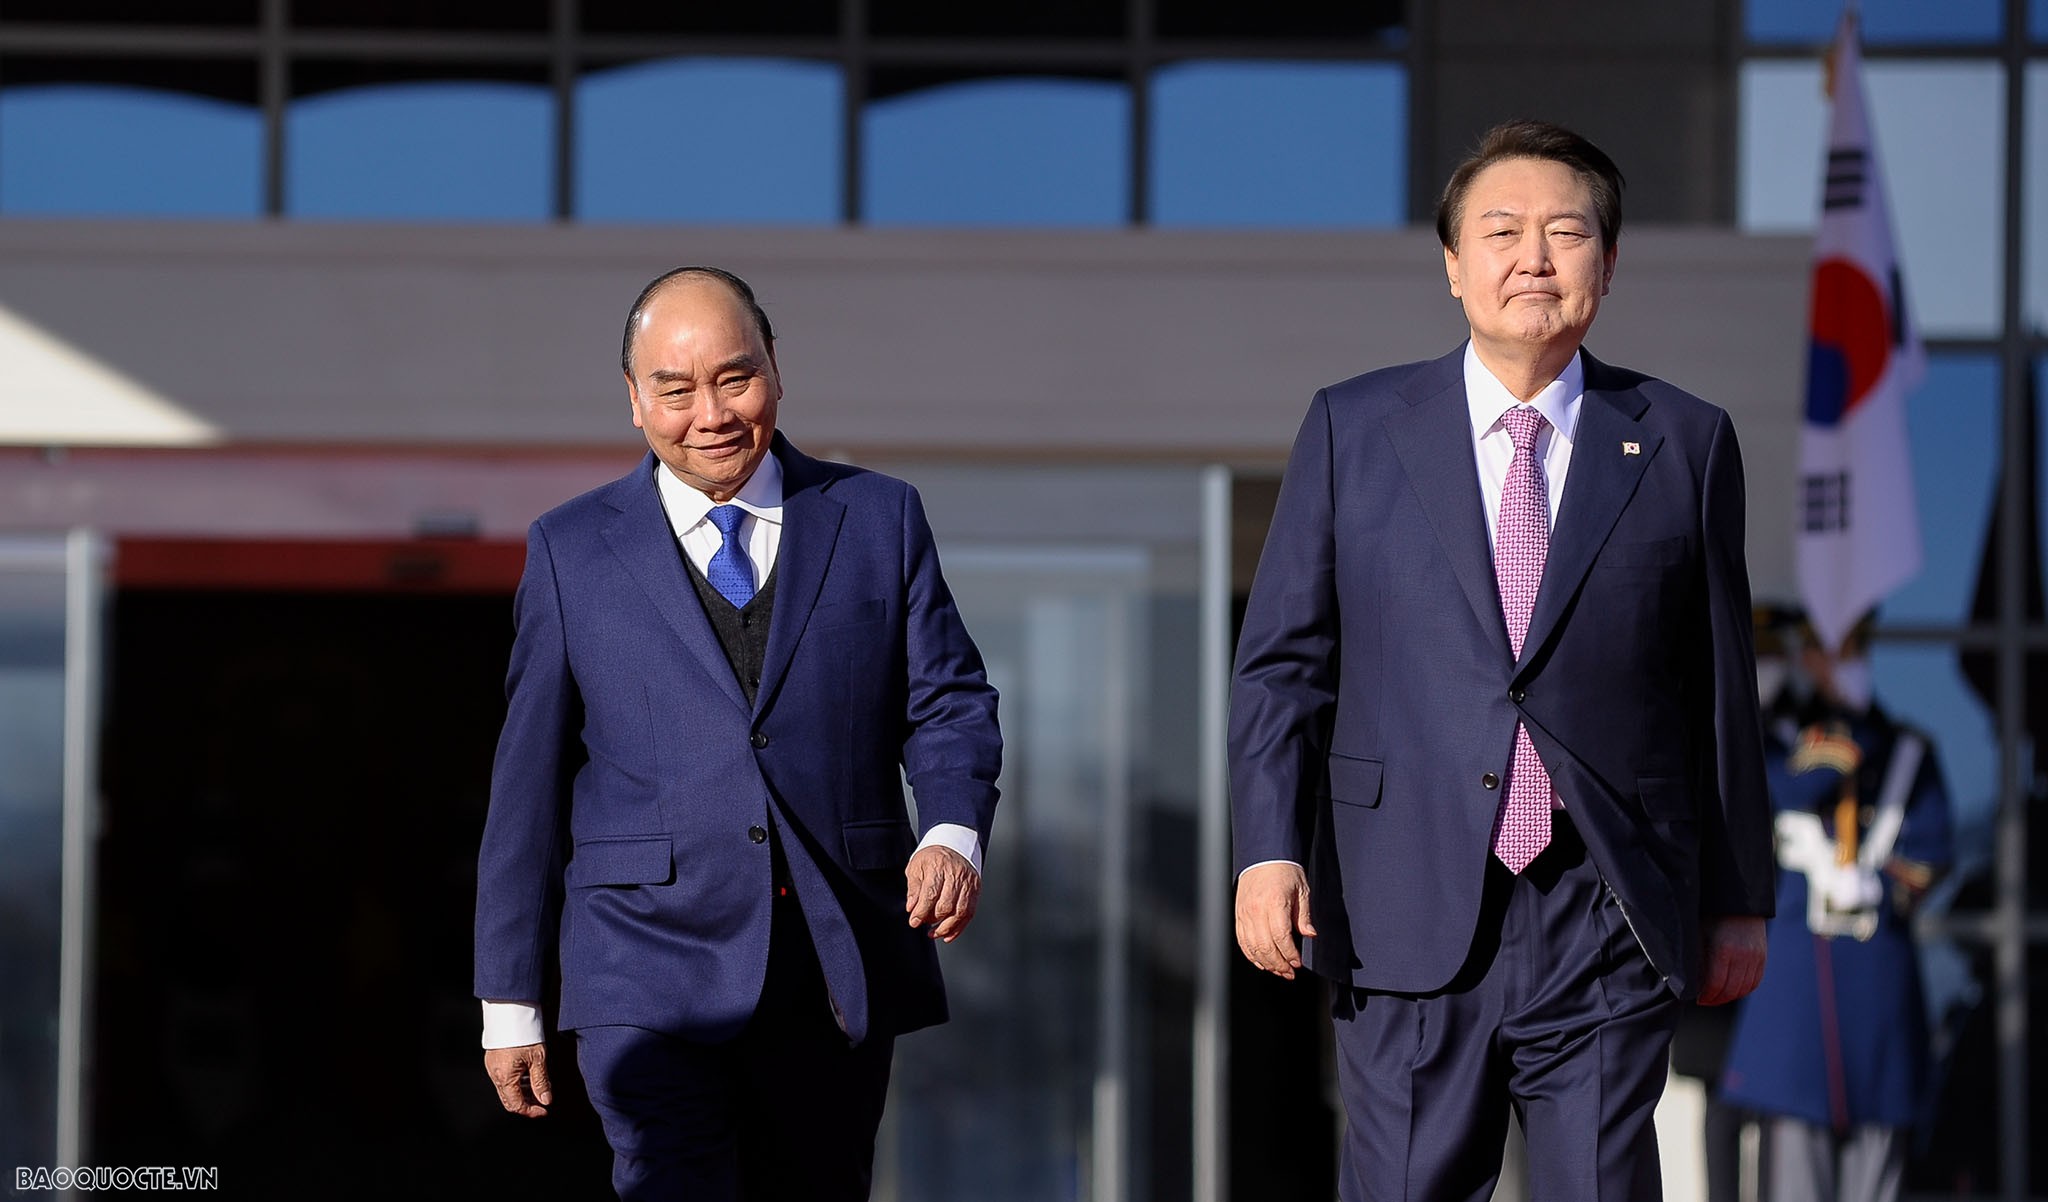 Đây là chuyến thăm chính thức Hàn Quốc đầu tiên của Chủ tịch nước Nguyễn Xuân Phúc trên cương vị mới, chuyến thăm chính thức đầu tiên của Chủ tịch nước đến Hàn Quốc sau 11 năm và là chuyến thăm cấp cao nhất của Lãnh đạo Đảng, Nhà nước Việt Nam tới Hàn Quố